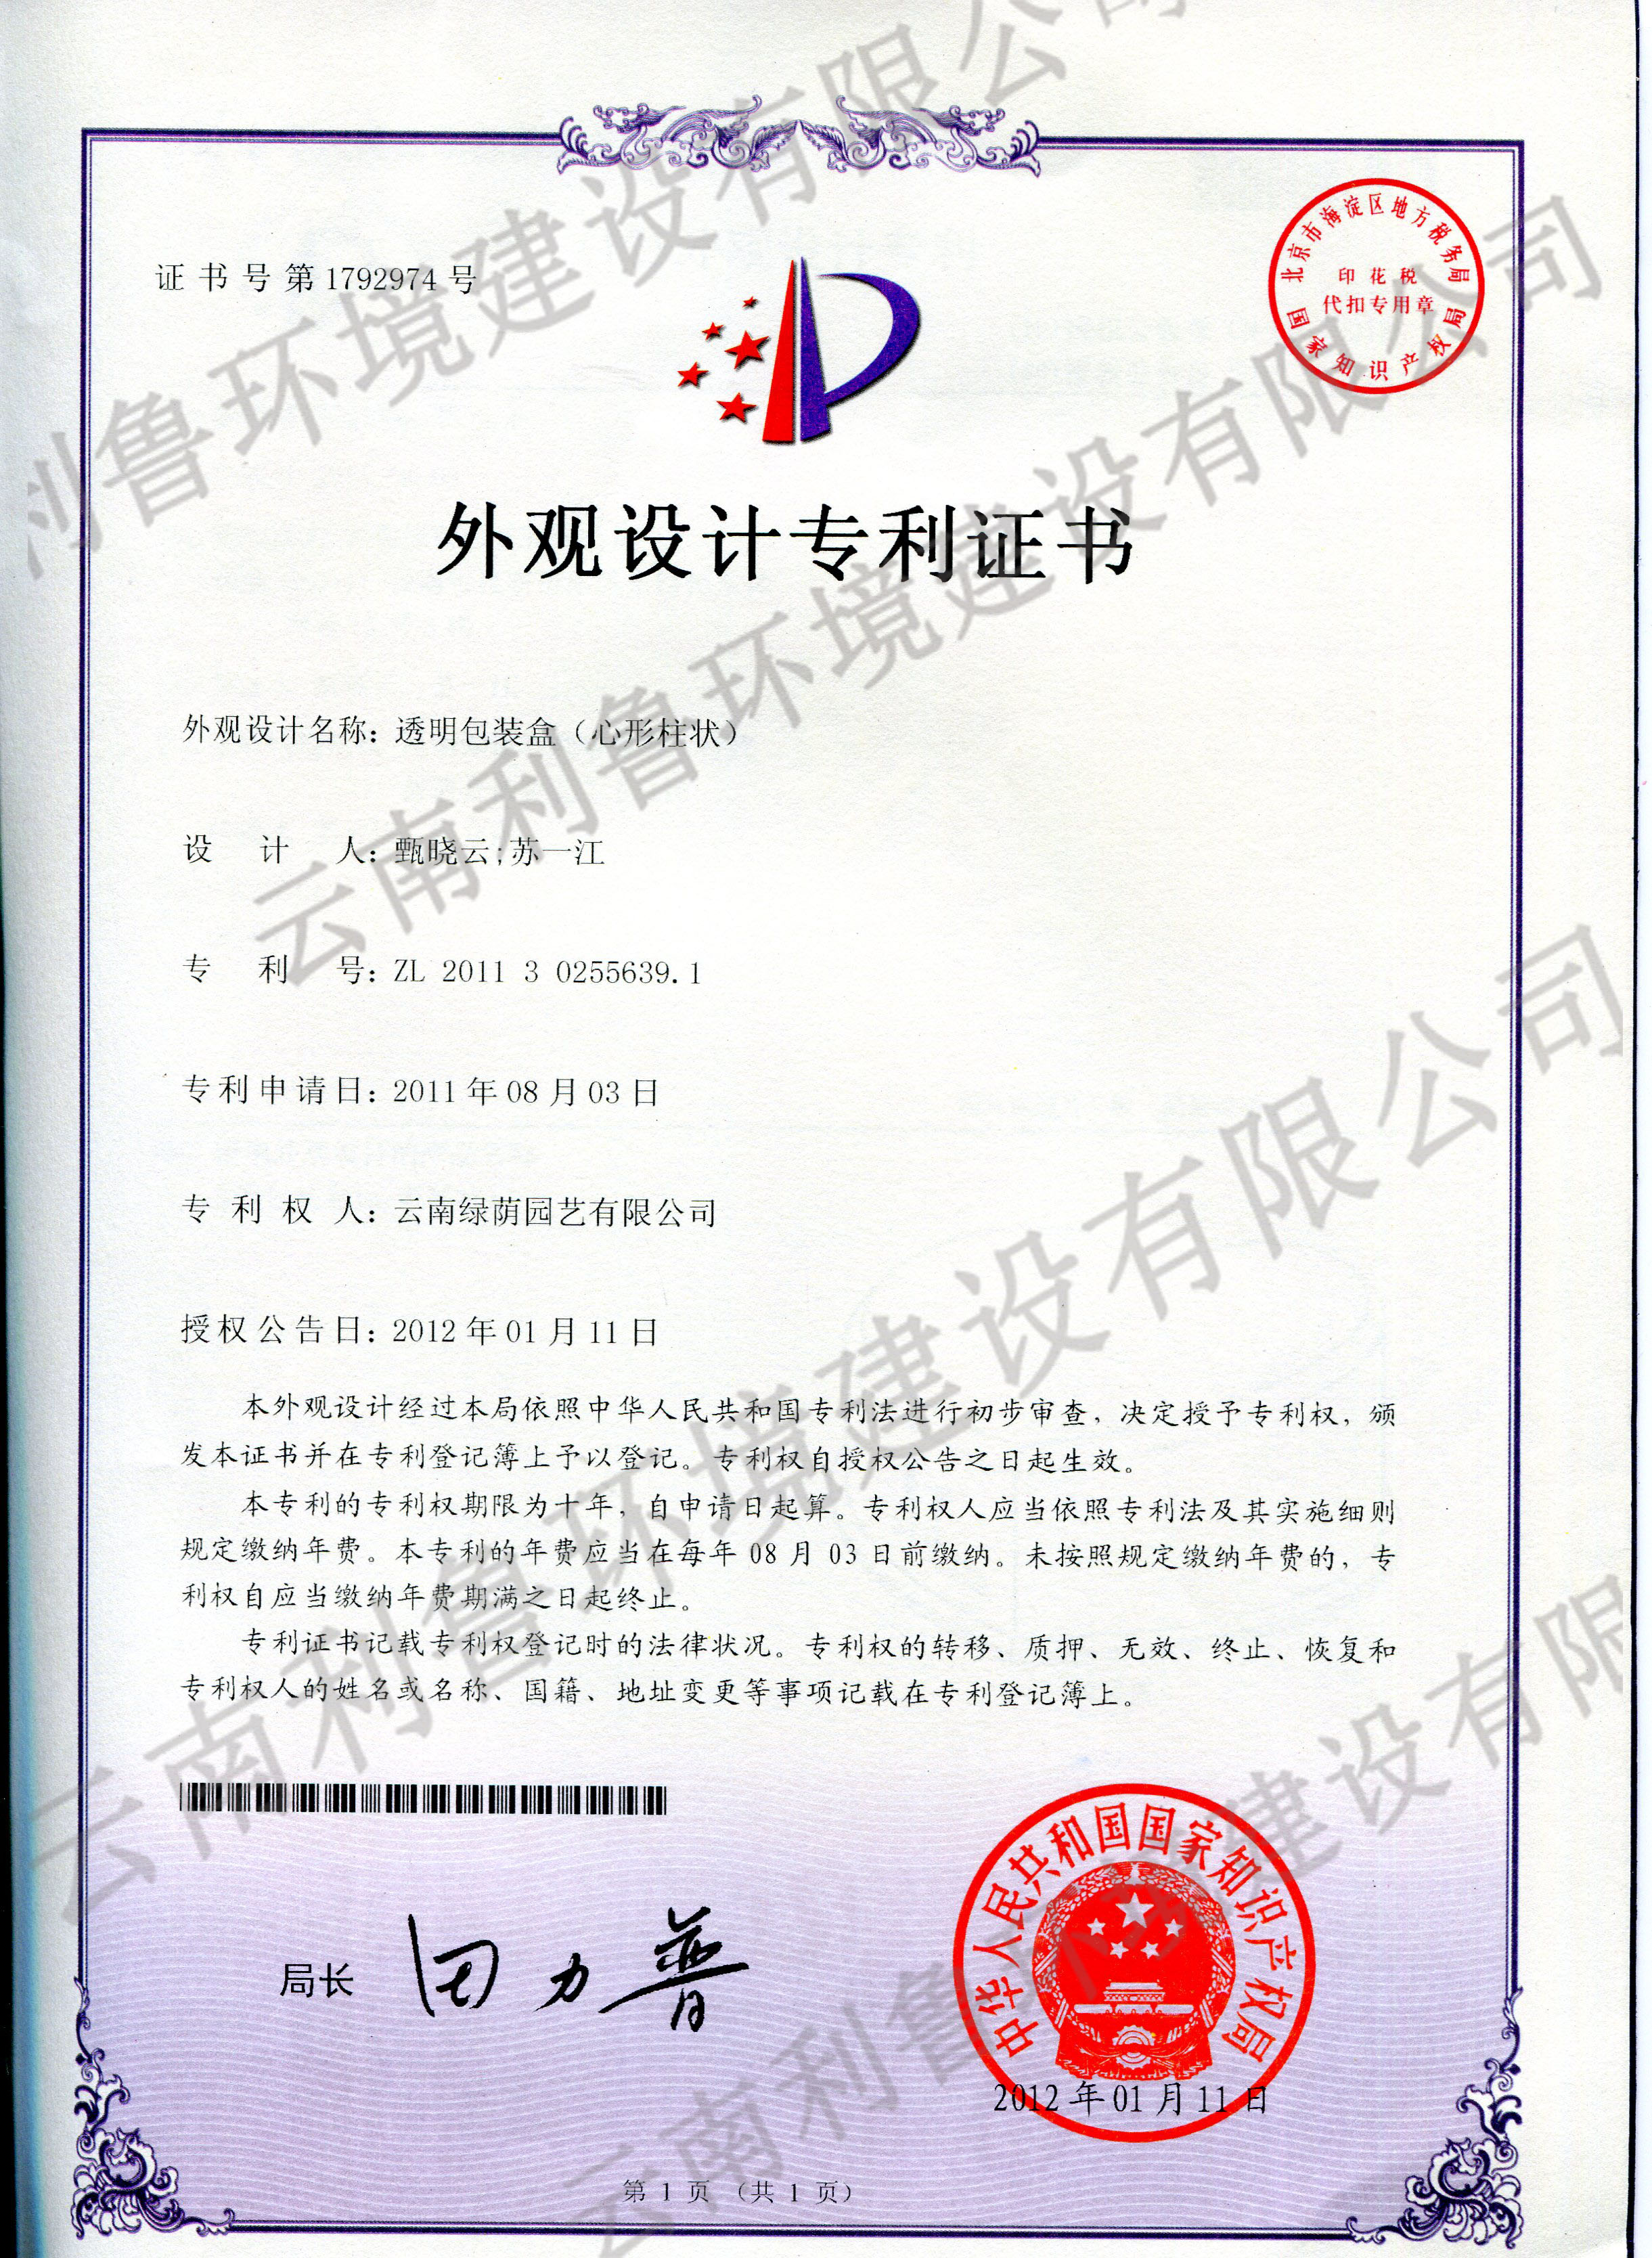 外观设计专利证书-透明包装盒（心形柱状）ZL 2011302556391